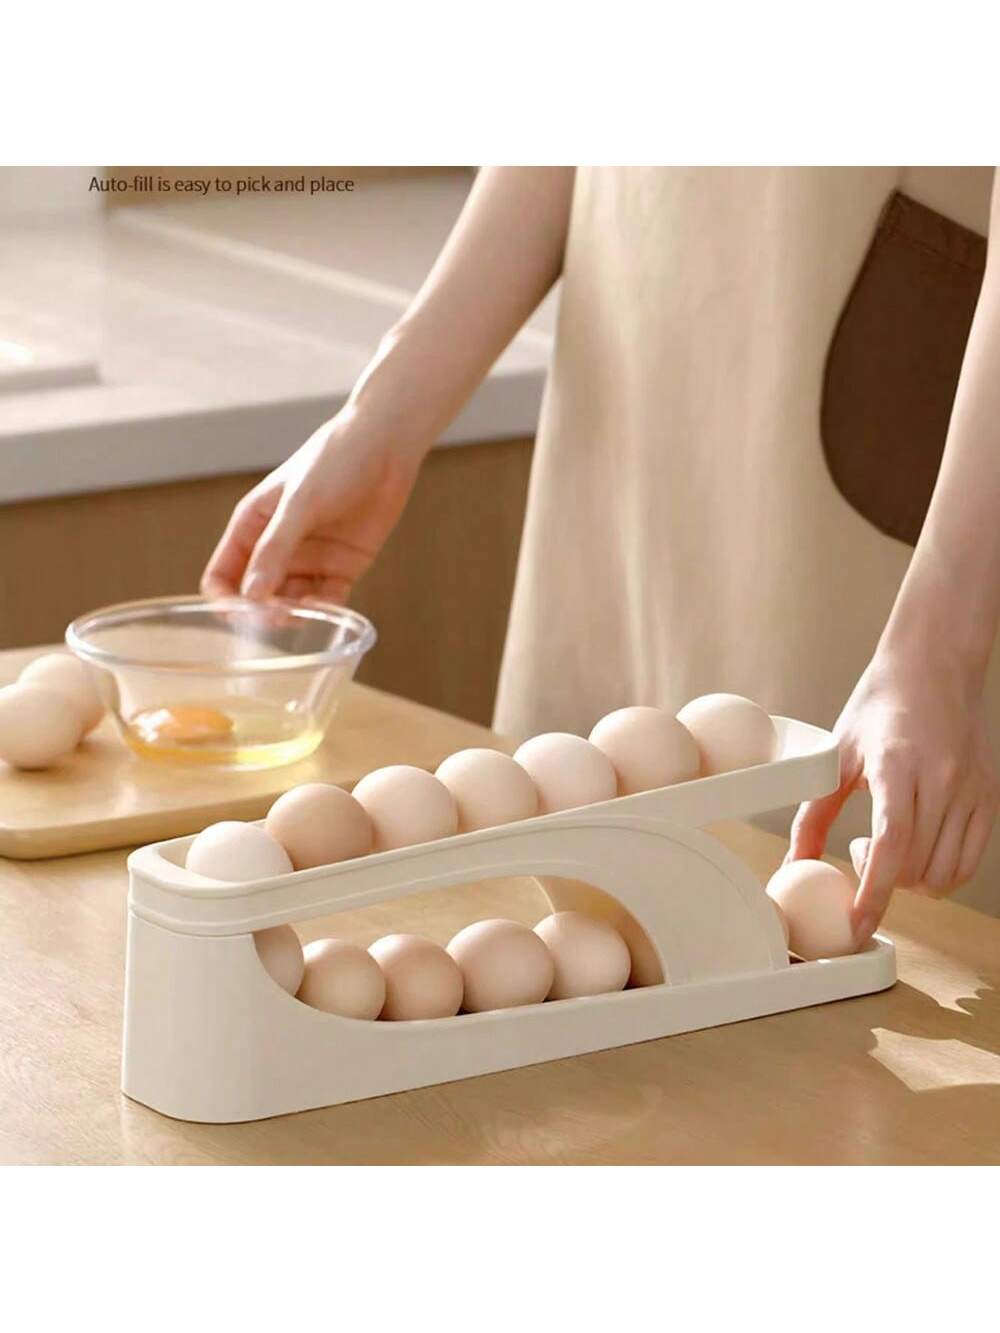 (1PC )Egg Holder For Refrigerator,2 Tier Auto Rolling Egg Dispenser Holder 15 Eggs,Space Saving Egg Storage For Fridge & Countertop,Roll Down Slide Ramp Track,Creamy White-Beige-3